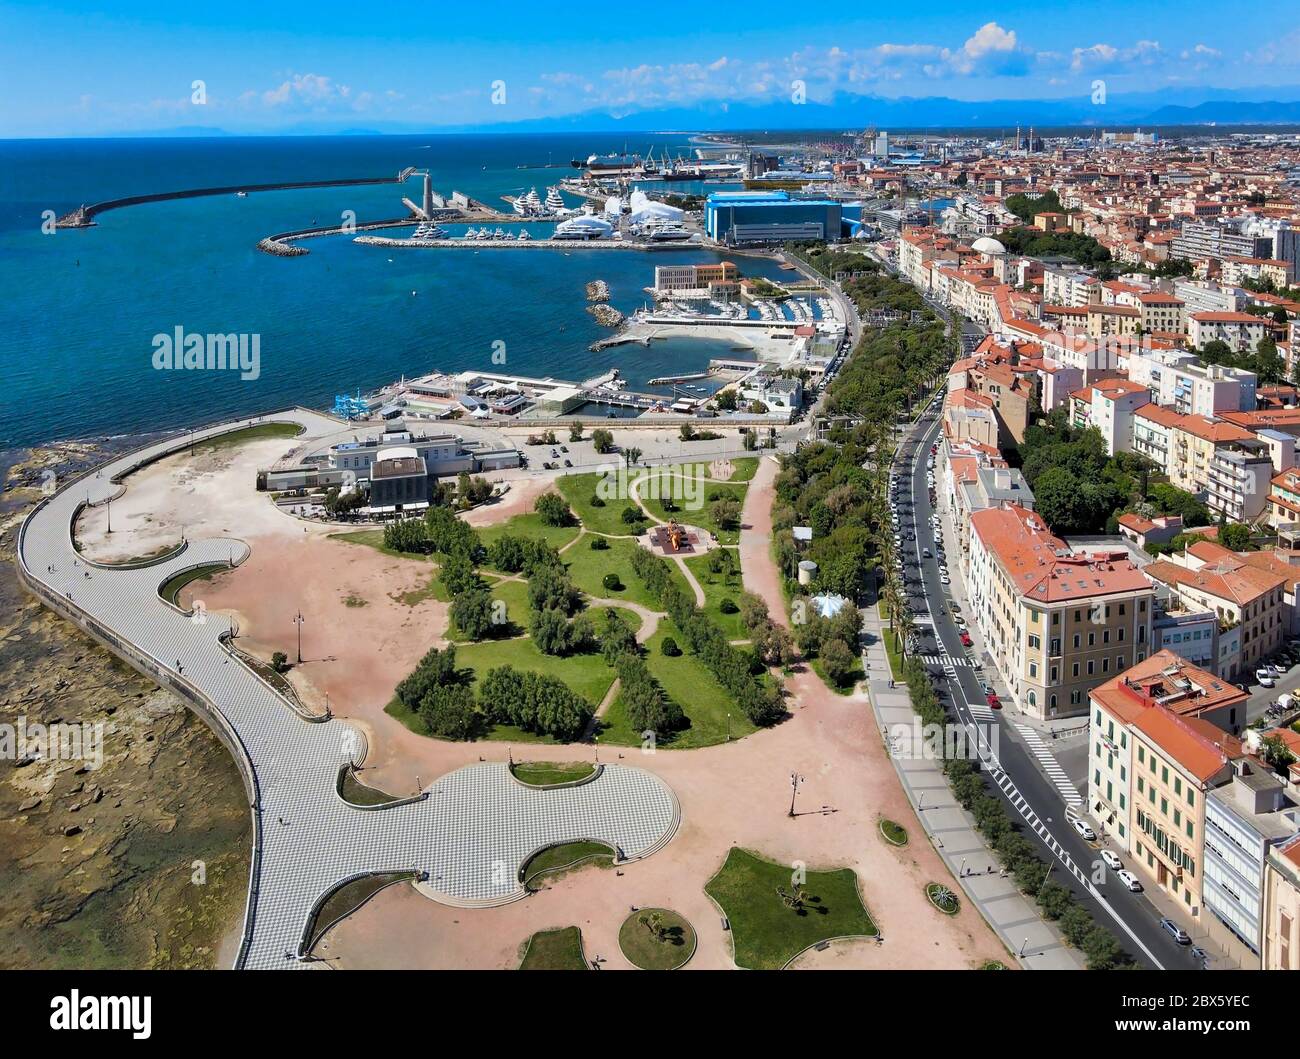 Splendida vista aerea di Livorno e della Terrazza di Mascagni, famosa città  della Toscana. Livorno dal drone, Italia Foto stock - Alamy